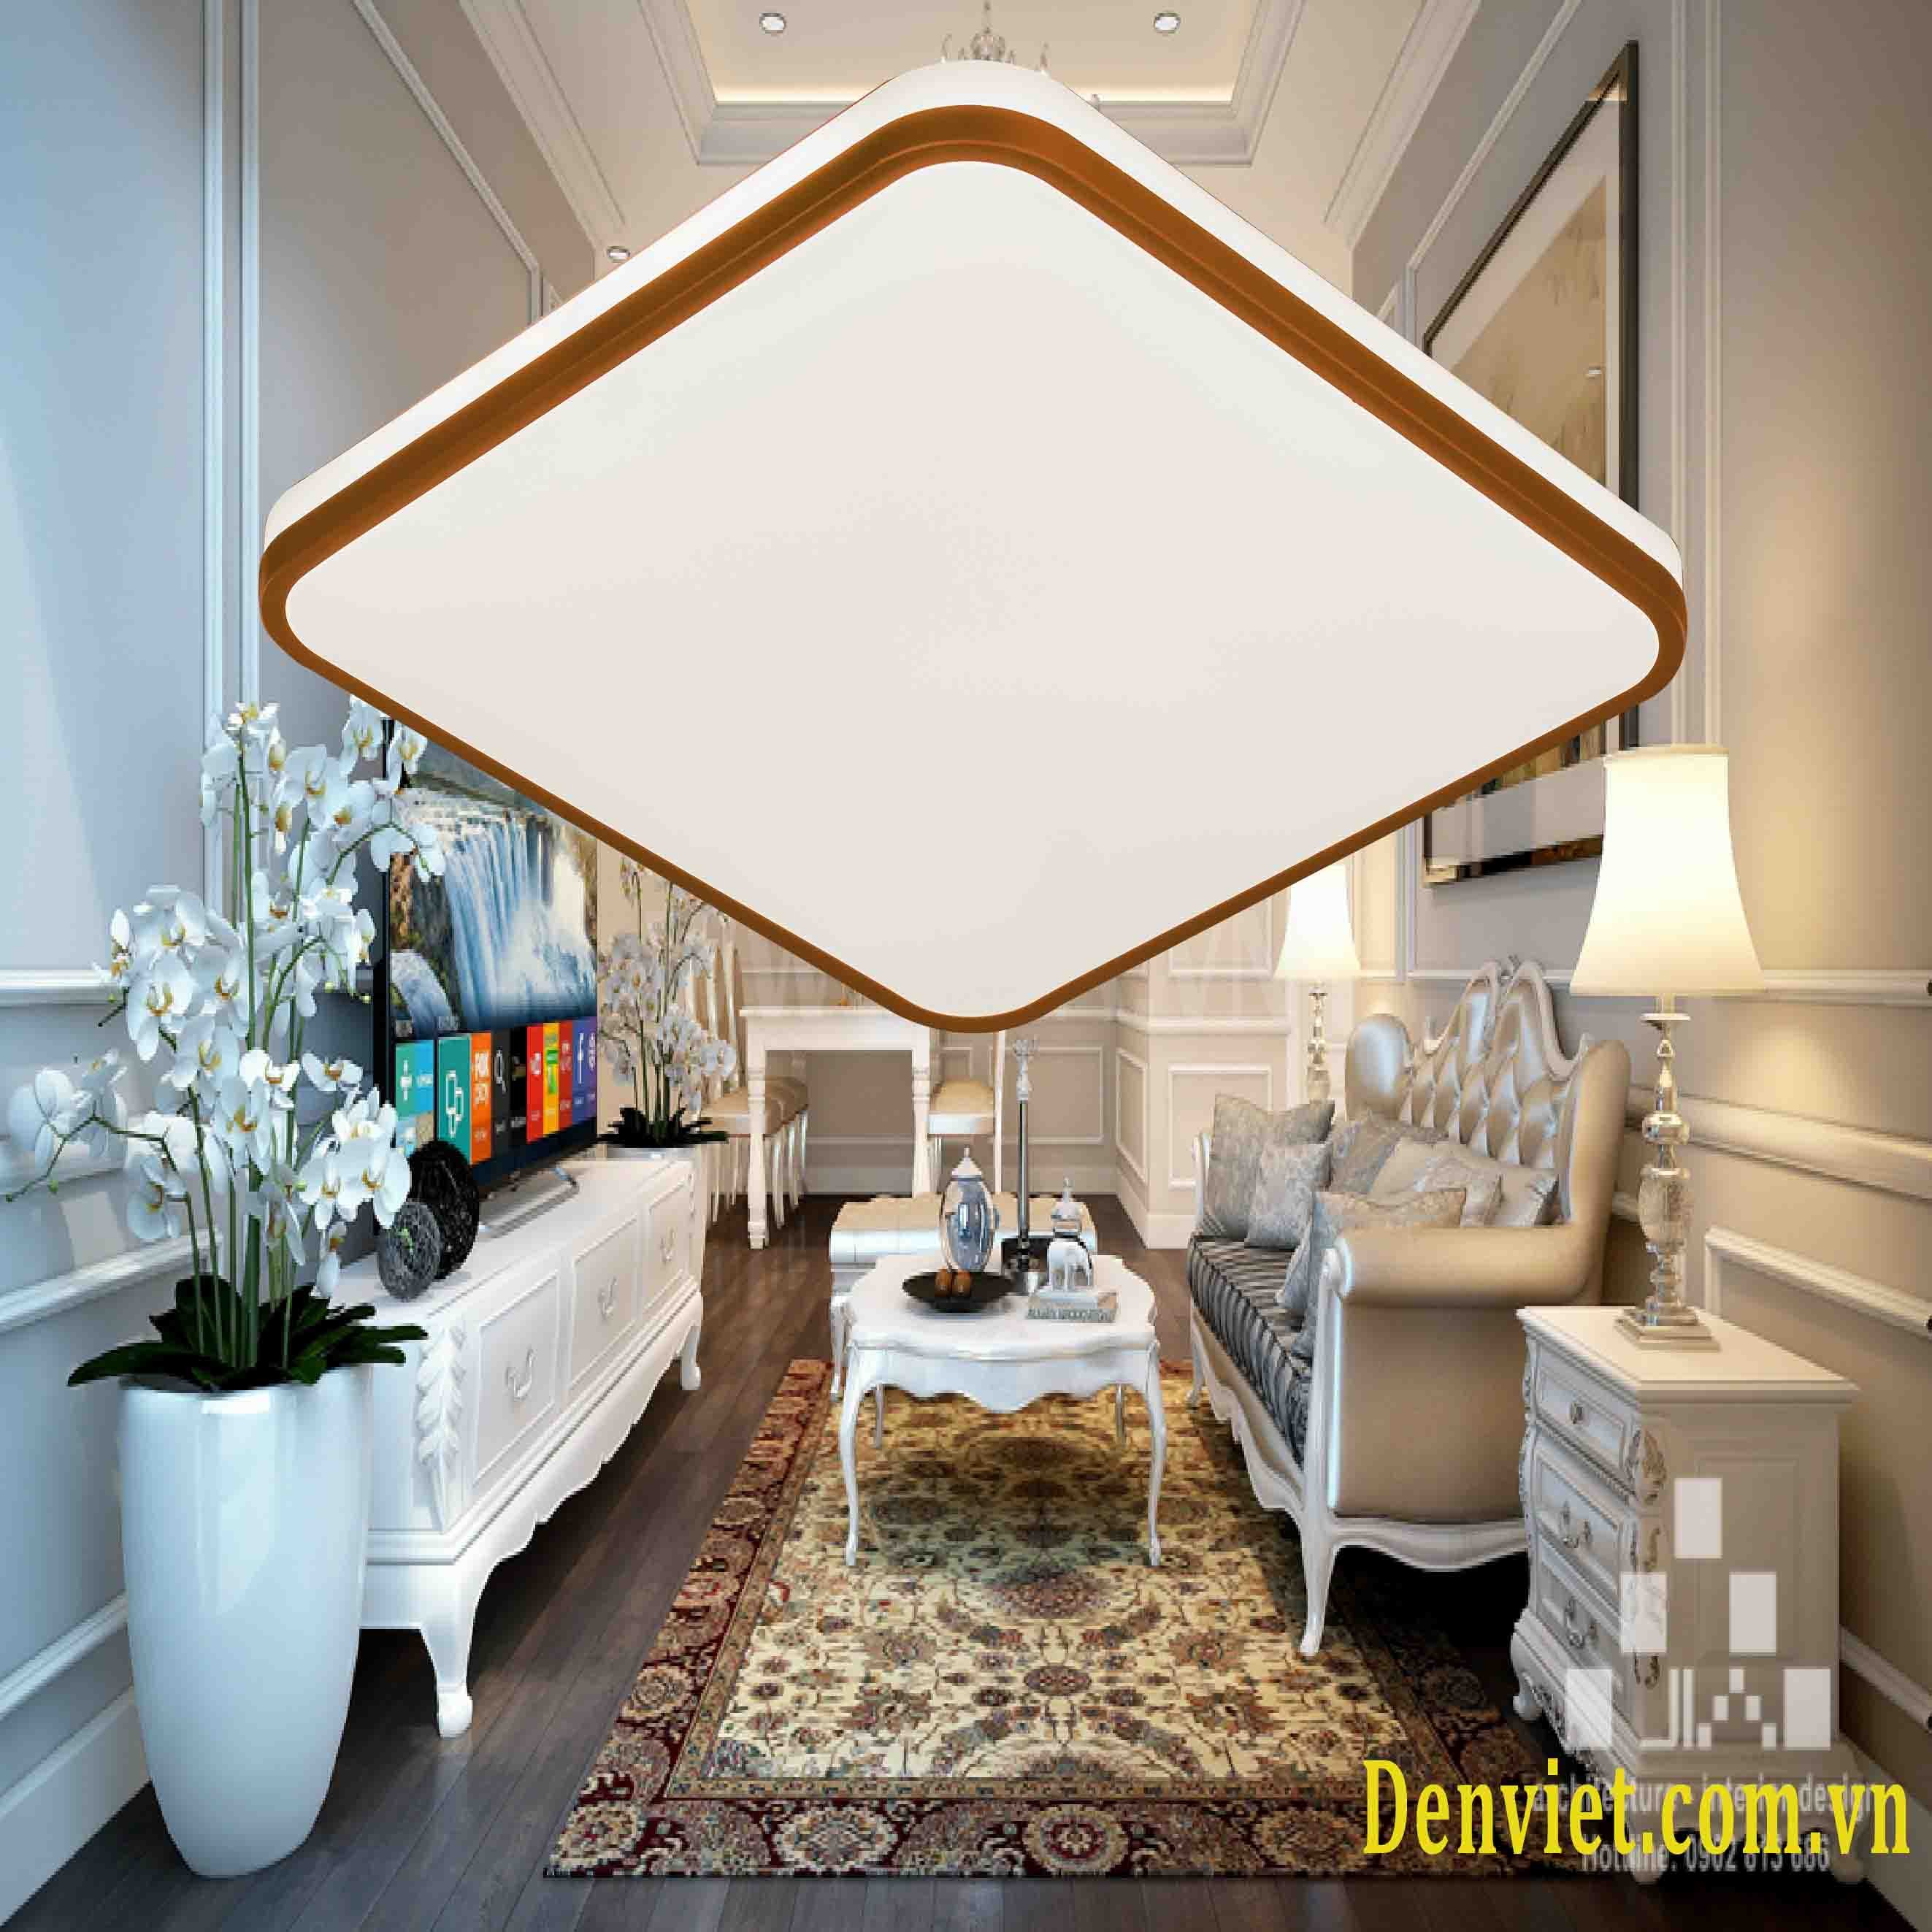 Đèn áp trần vuông LED là sự lựa chọn tuyệt vời cho mọi không gian nội thất trong nhà bạn. Với công nghệ LED tiên tiến, đèn giúp tiết kiệm điện năng và phát ra ánh sáng rực rỡ, đồng thời tạo ra không gian thoải mái và hiện đại. Tham khảo hình ảnh đèn áp trần vuông LED để tạo ra không gian sống của bạn trở nên tươi sáng và sáng tạo hơn.